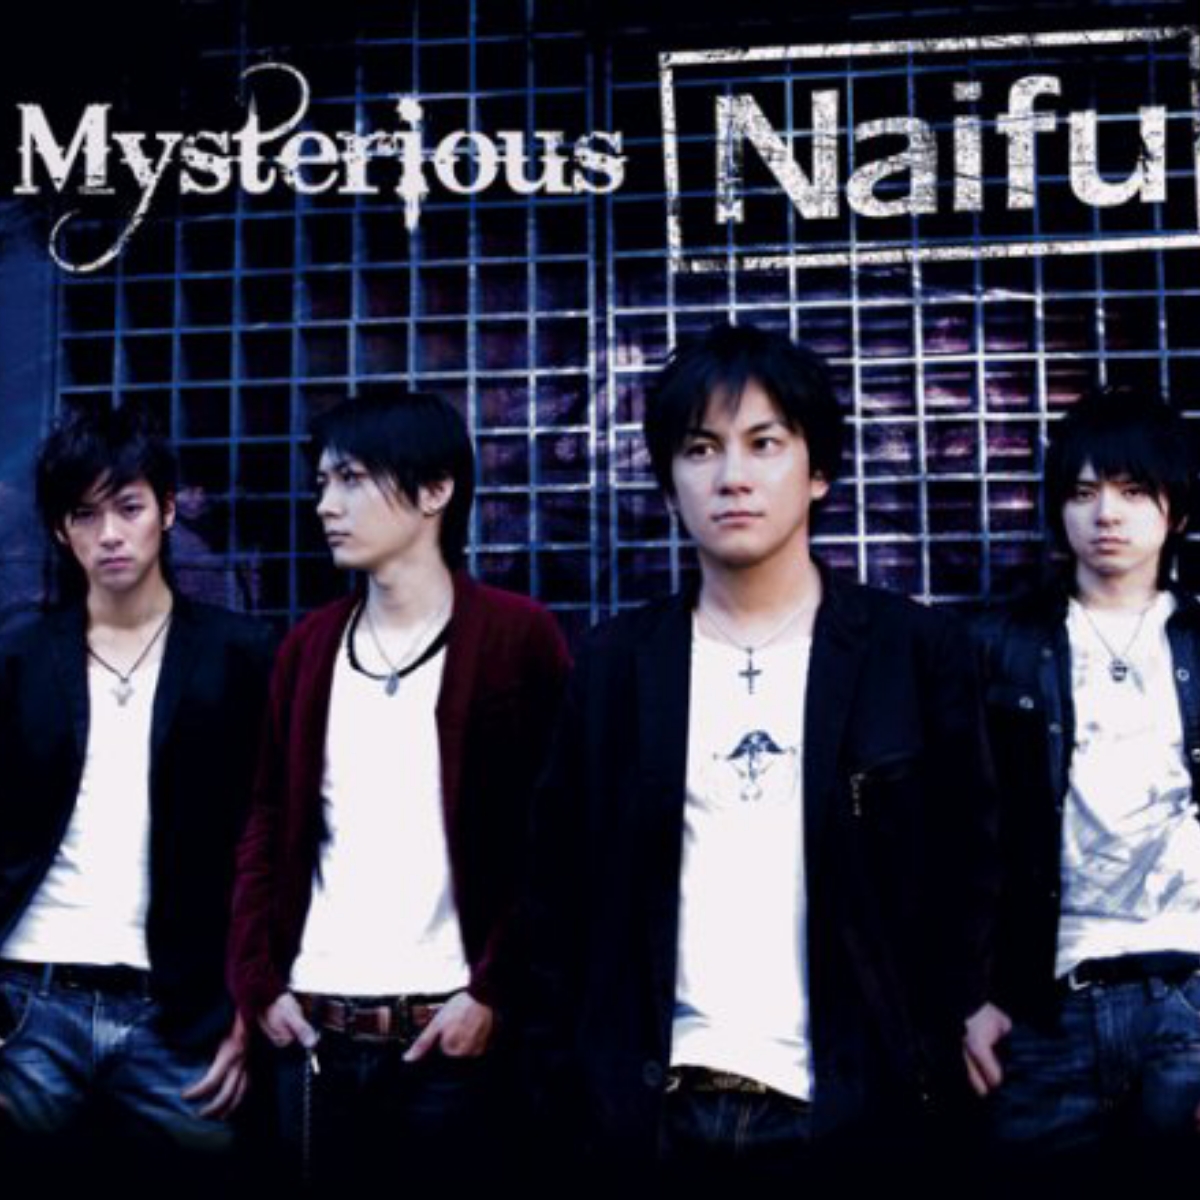 Naifu - Mysterious